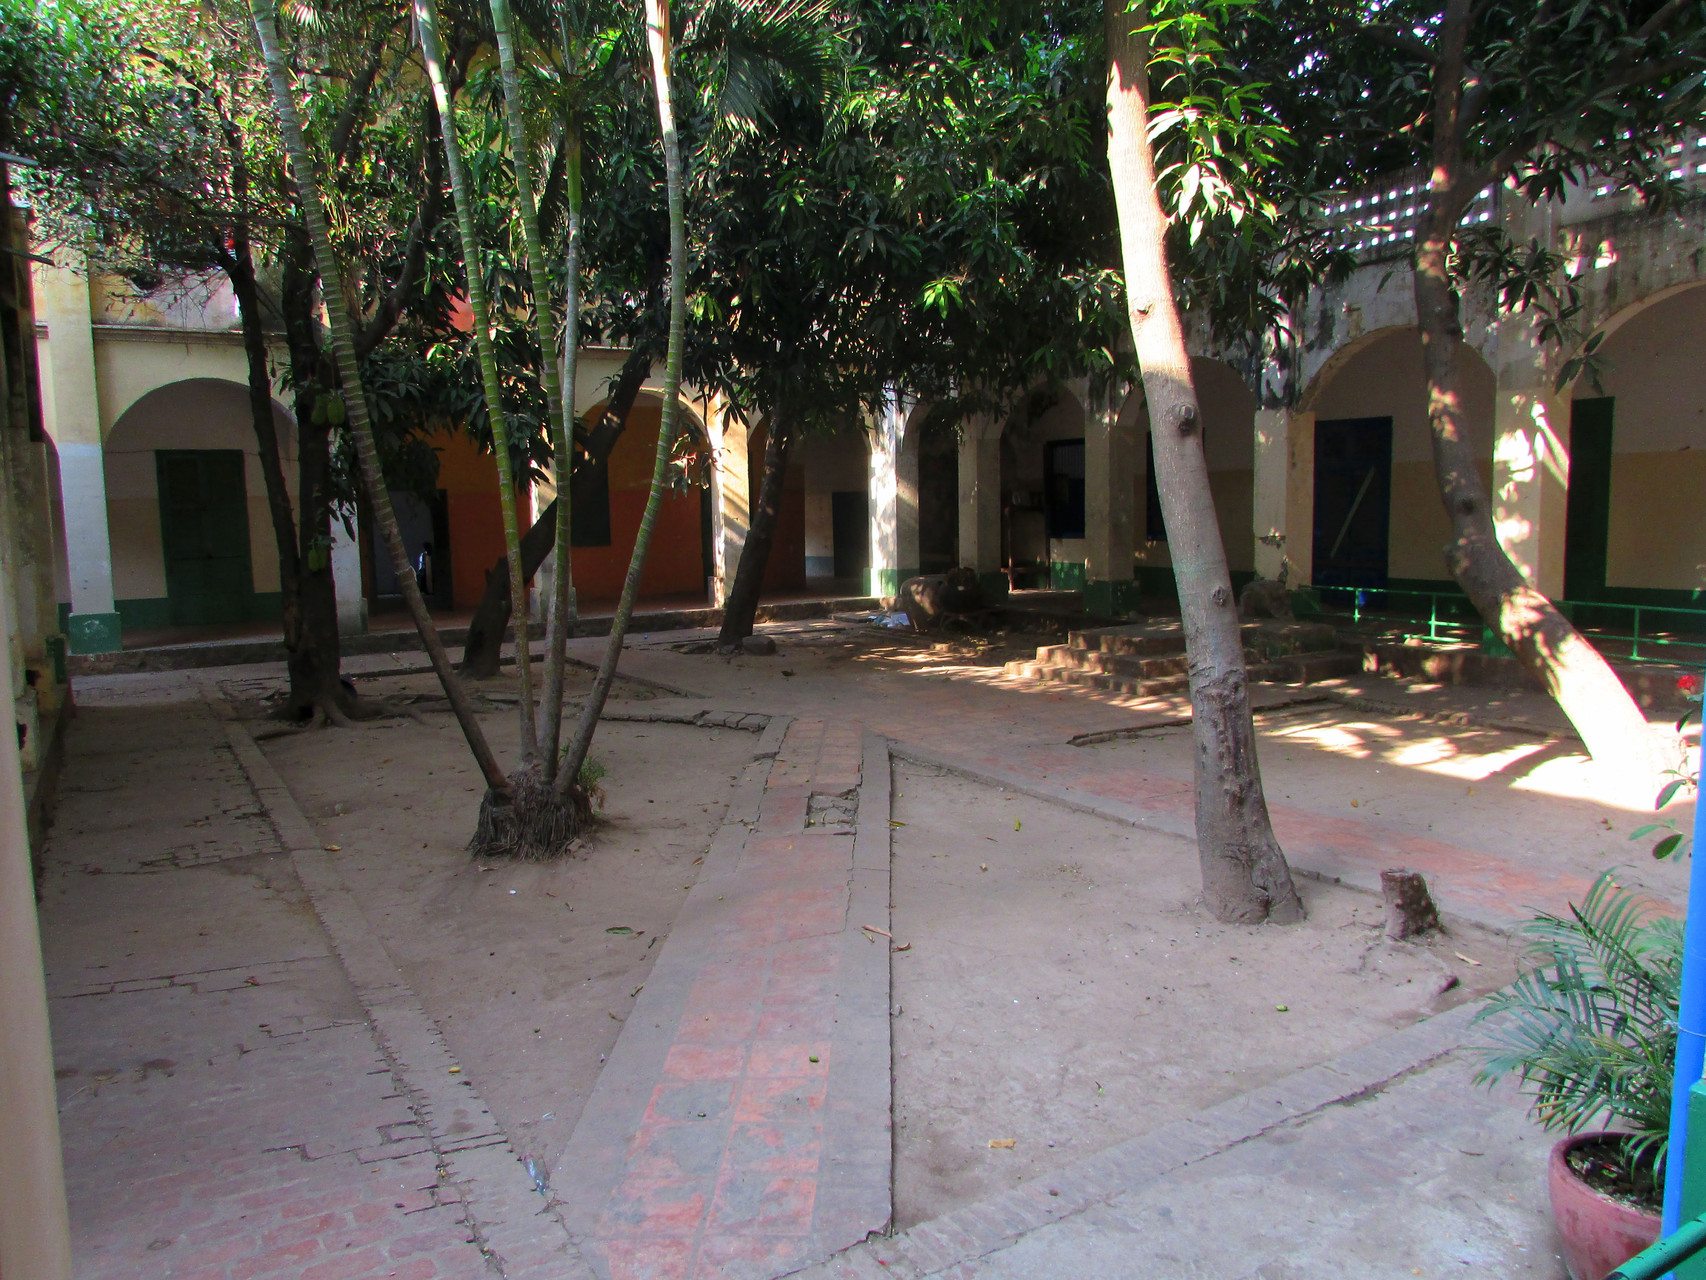 Au milieu du bâtiment, nous avons une cour intérieure. Il y a des arbres, comme un manguier.